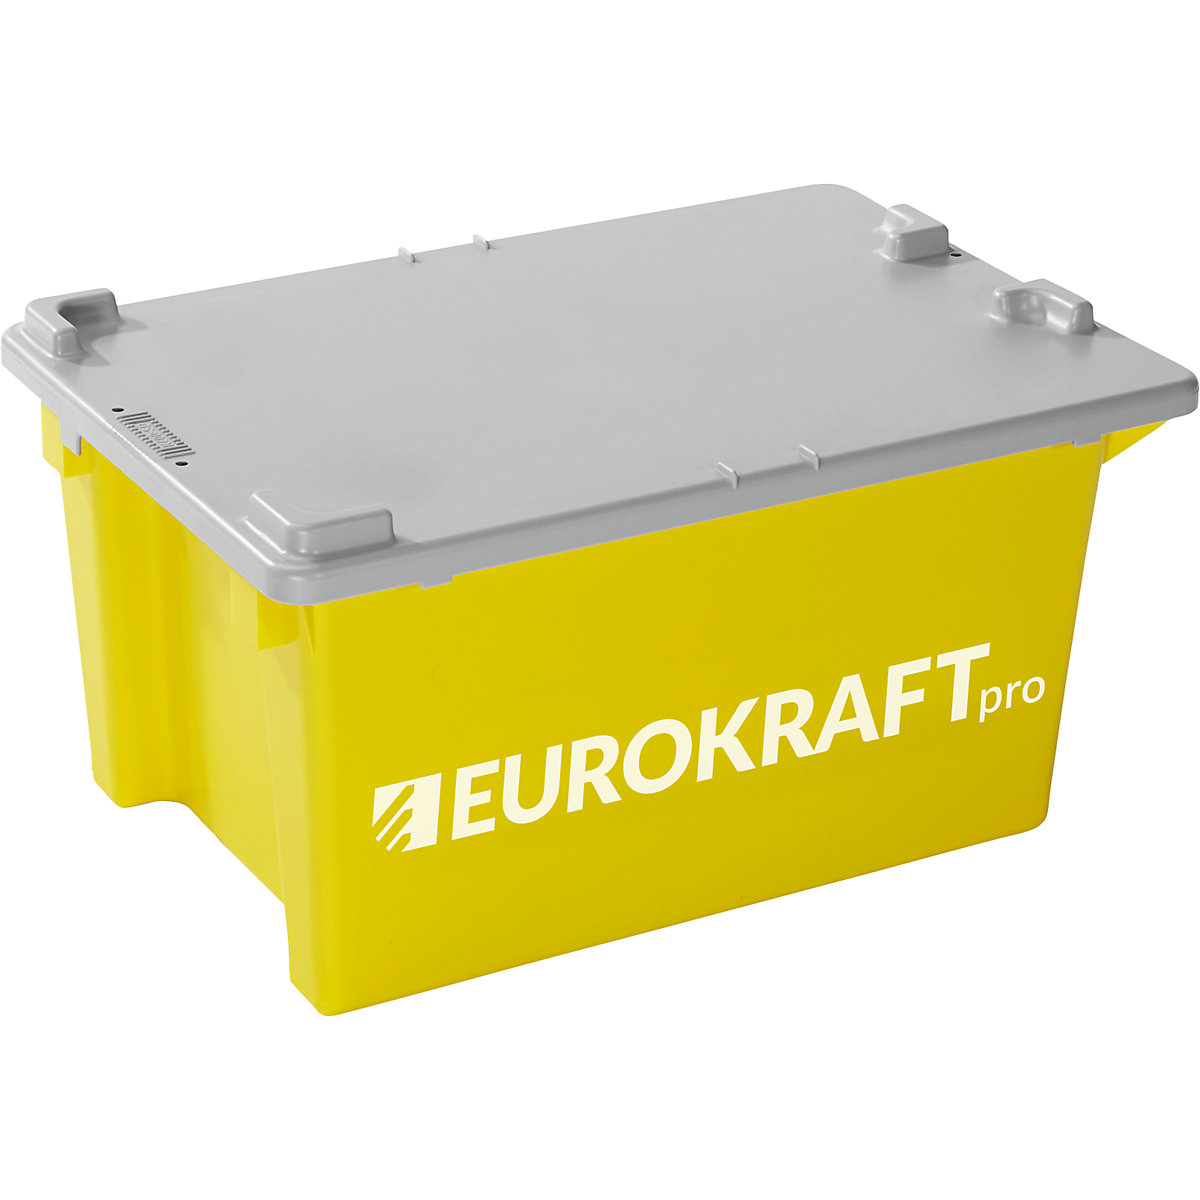 EUROKRAFTpro – Zasučni zaboj za zlaganje (Slika izdelka 4)